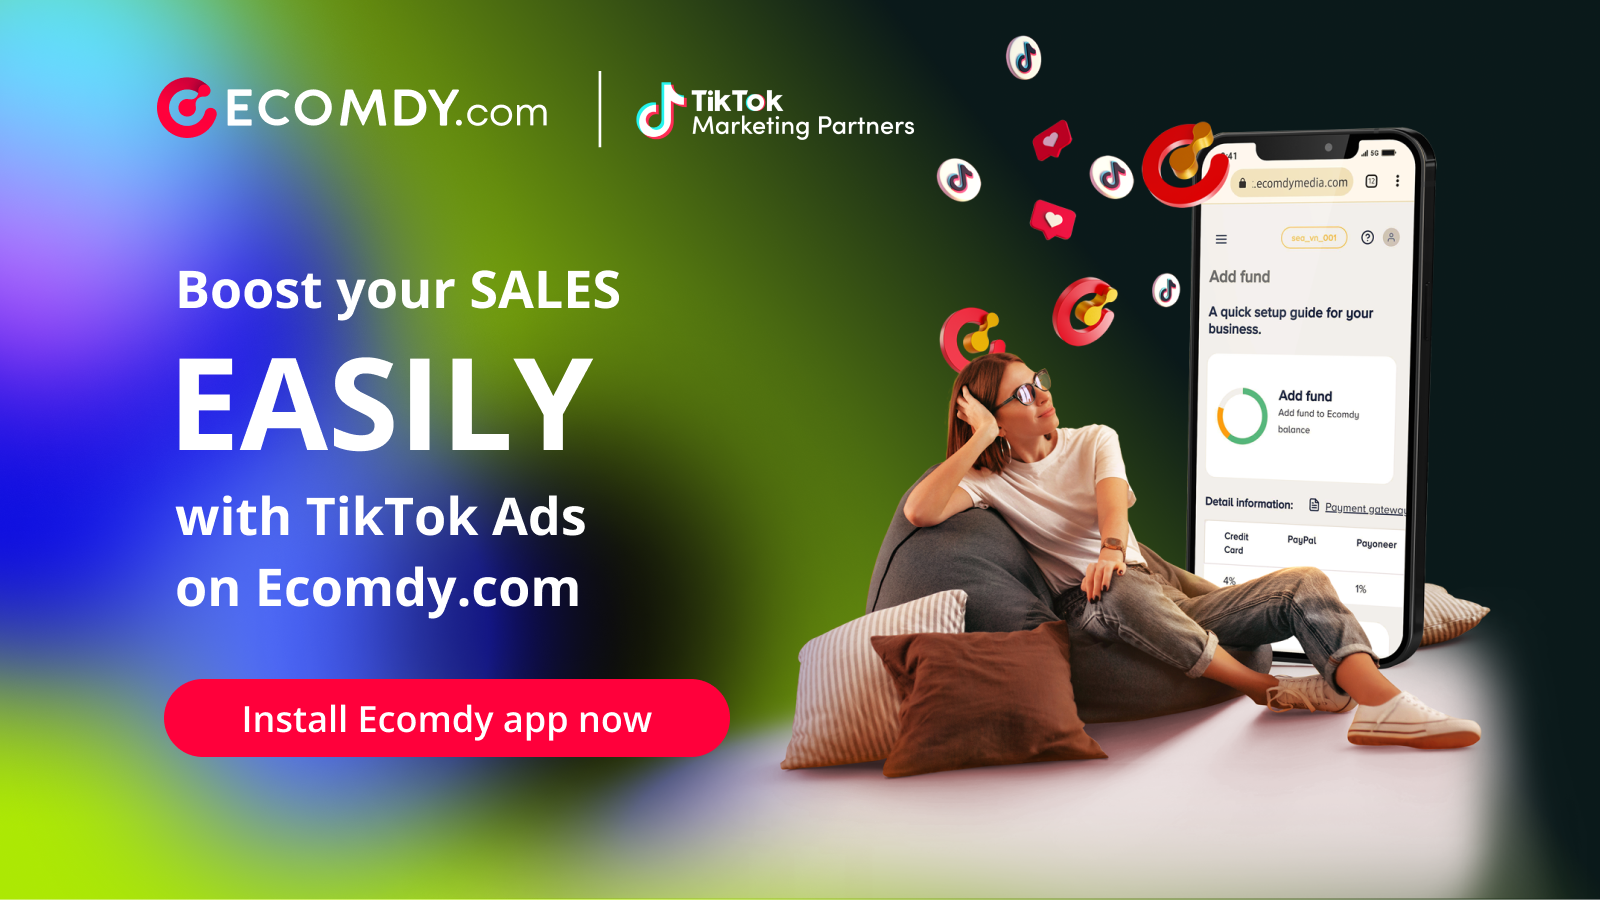 Steigern Sie den Verkauf ganz einfach mit TikTok-Anzeigen auf Ecomdy.com